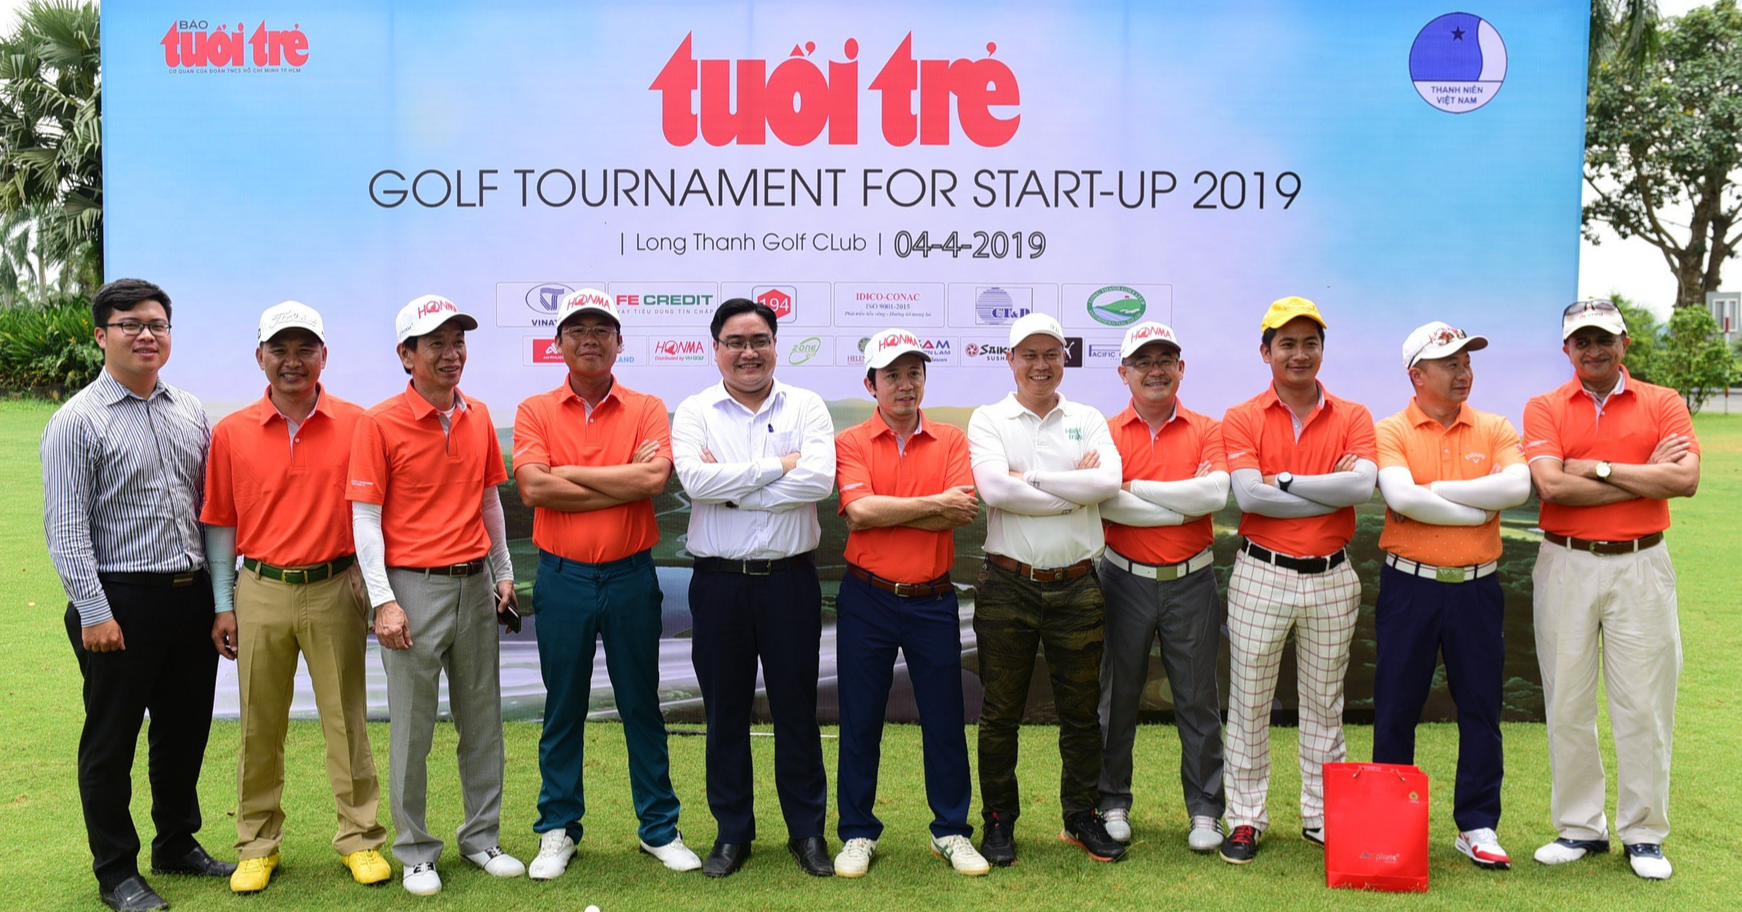 Anh Ngô Minh Hải (thứ 5 từ trái sang) tham gia Tuổi Trẻ Golf Tournament for Start-Up 2019 - Ảnh: QUANG ĐỊNH